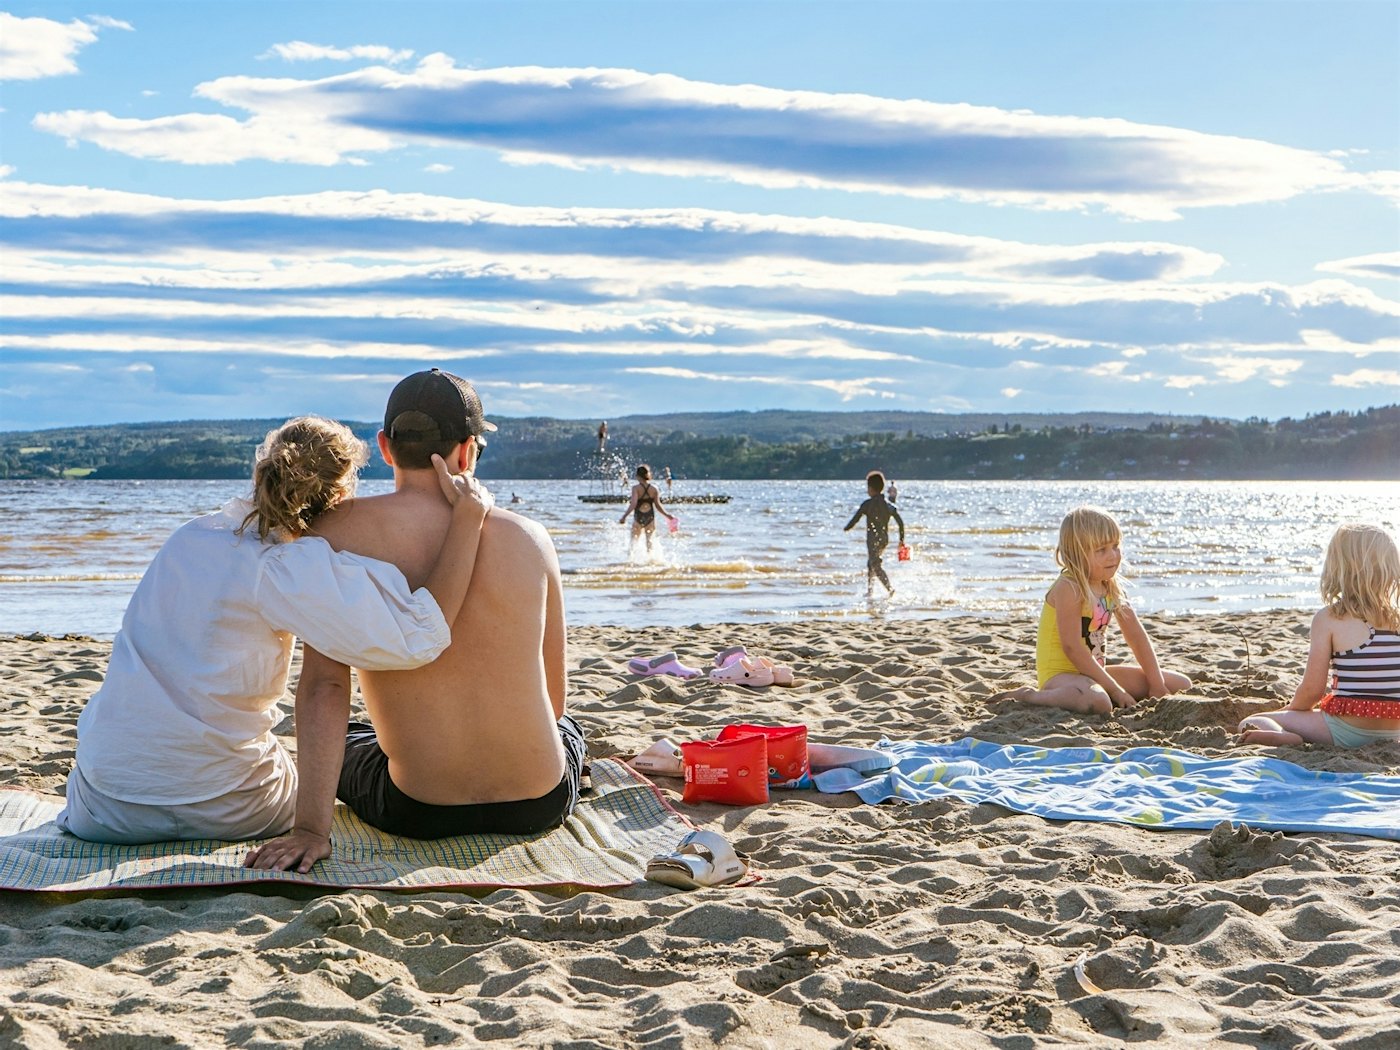 Frau und Mann sitzen auf einem Handtuch am Strand, die Frau hält den Mann um sich, während sie auf den Strand und das Wasser blicken. Zwei Mädchen spielen nebenan im Sand. Andere Kinder laufen ins Wasser. Foto